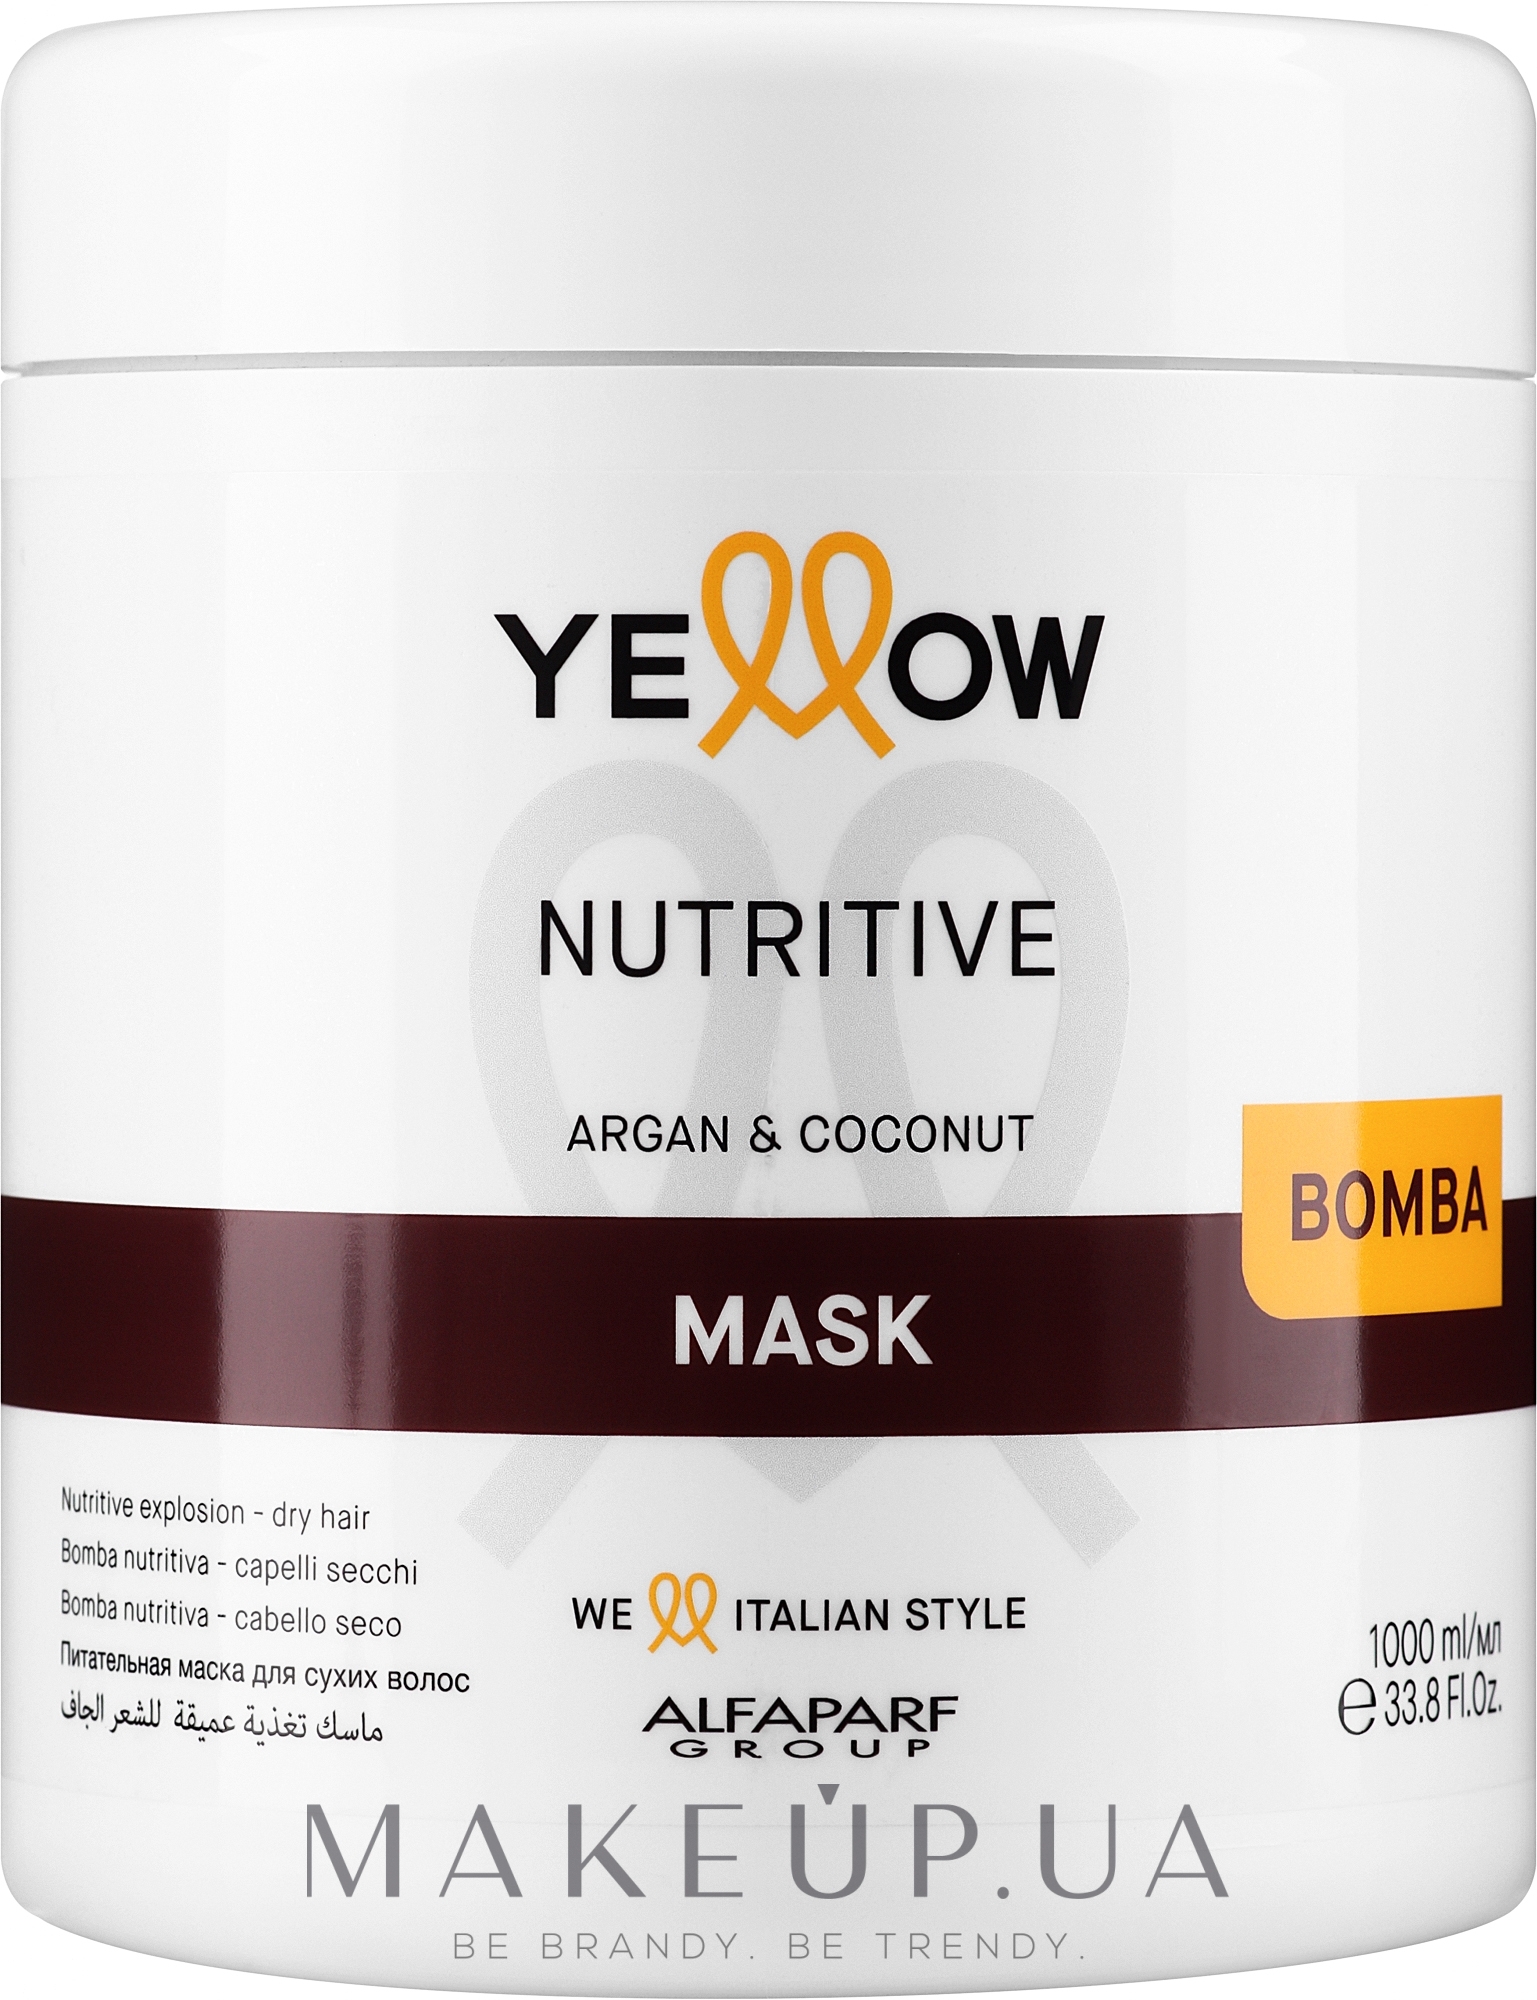 Питательная маска для волос - Yellow Nutrive Argan & Coconut Mask — фото 1000ml